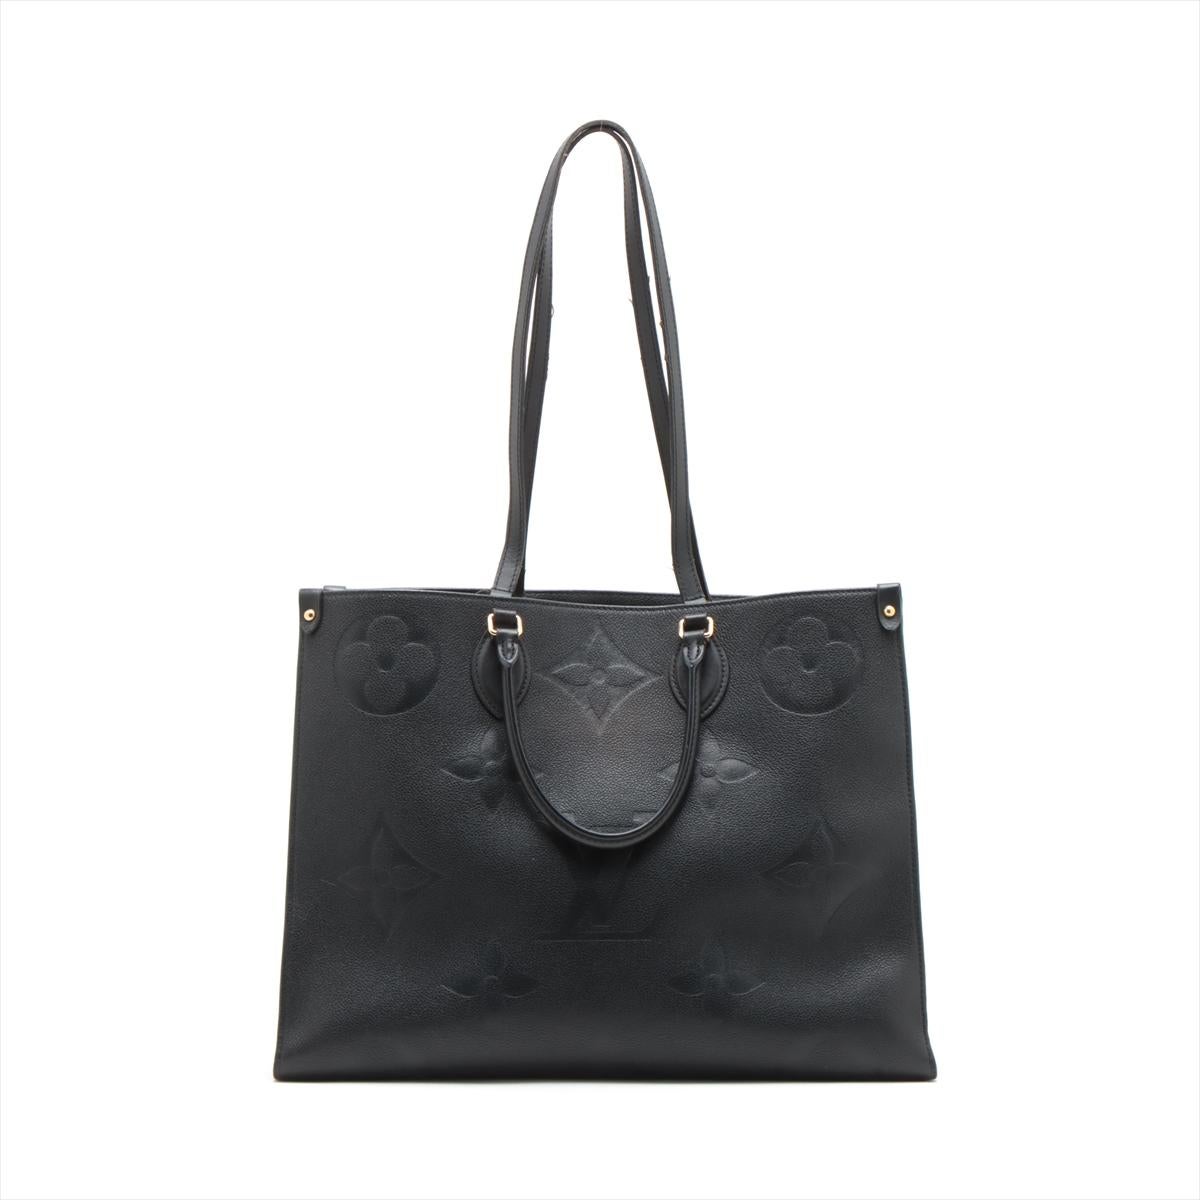 Le sac Louis Vuitton Monogram Empreinte On the Go GM en noir est un fourre-tout luxueux et spacieux qui incarne l'élégance moderne et la sophistication. Le sac est réalisé en cuir Monogram Empreinte emblématique de Louis Vuitton, connu pour sa